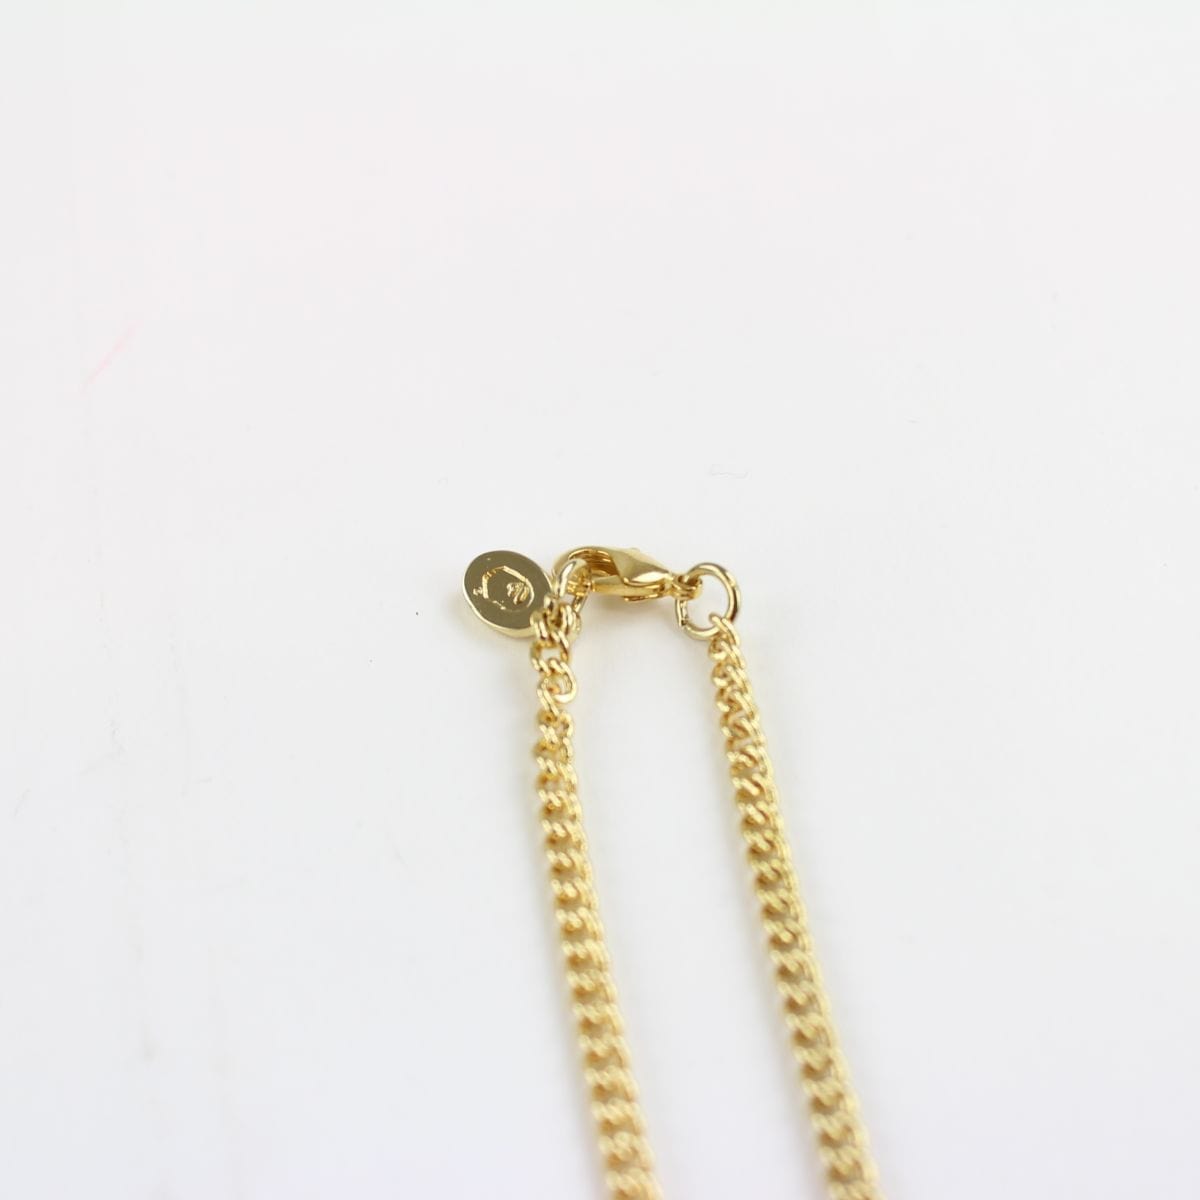 Bapesta Gold Pendant Necklace - SaruGeneral